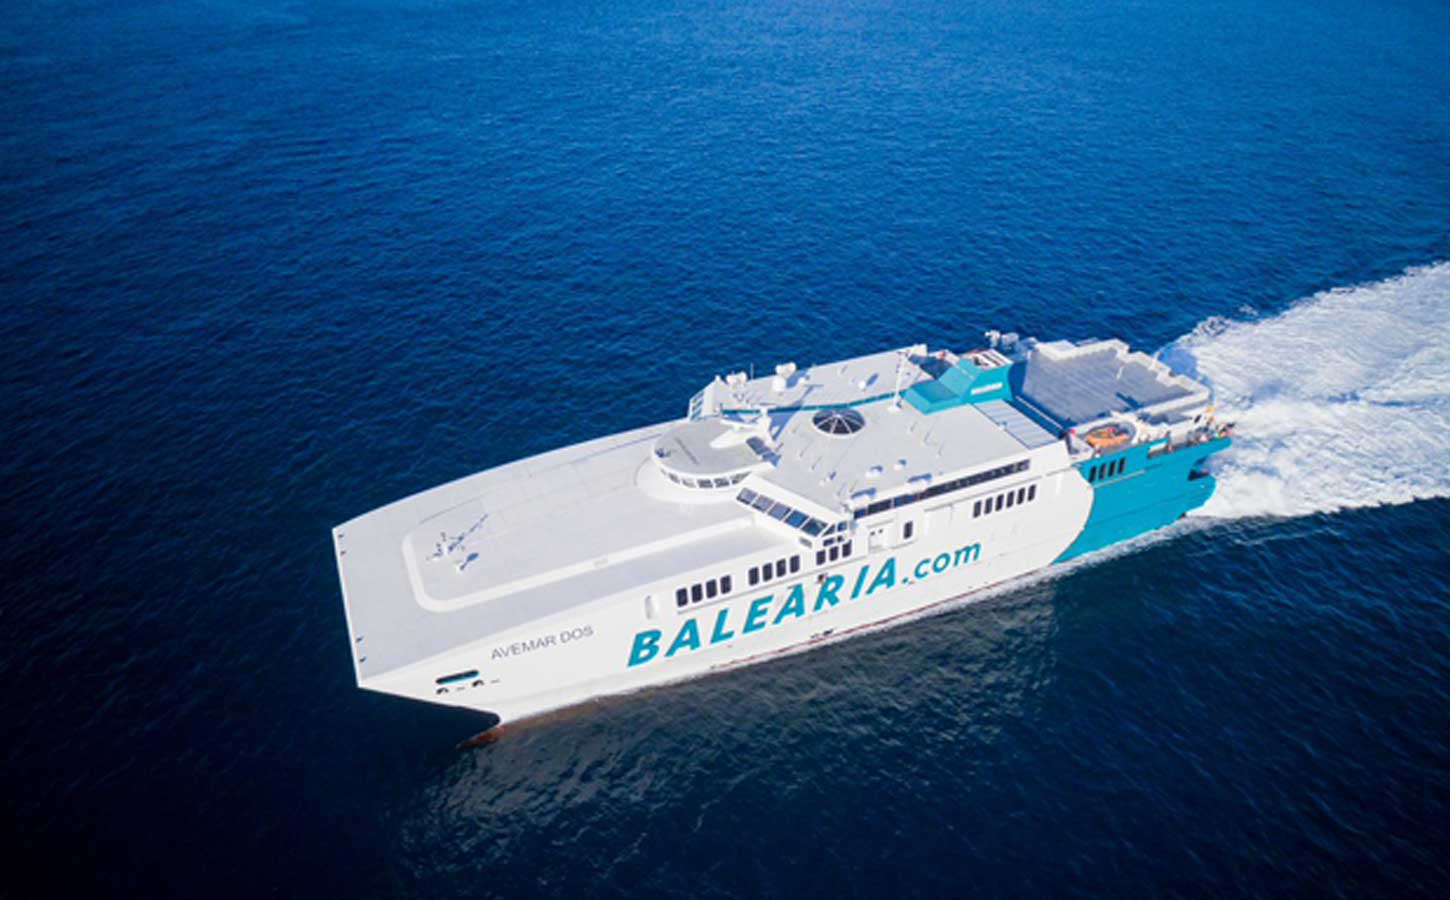 Oferta de Balearia para viajar en el ferry Melilla Málaga en el barco nuevo, ferry Rusadir, con un 20 por ciento de descuento viajando con coche